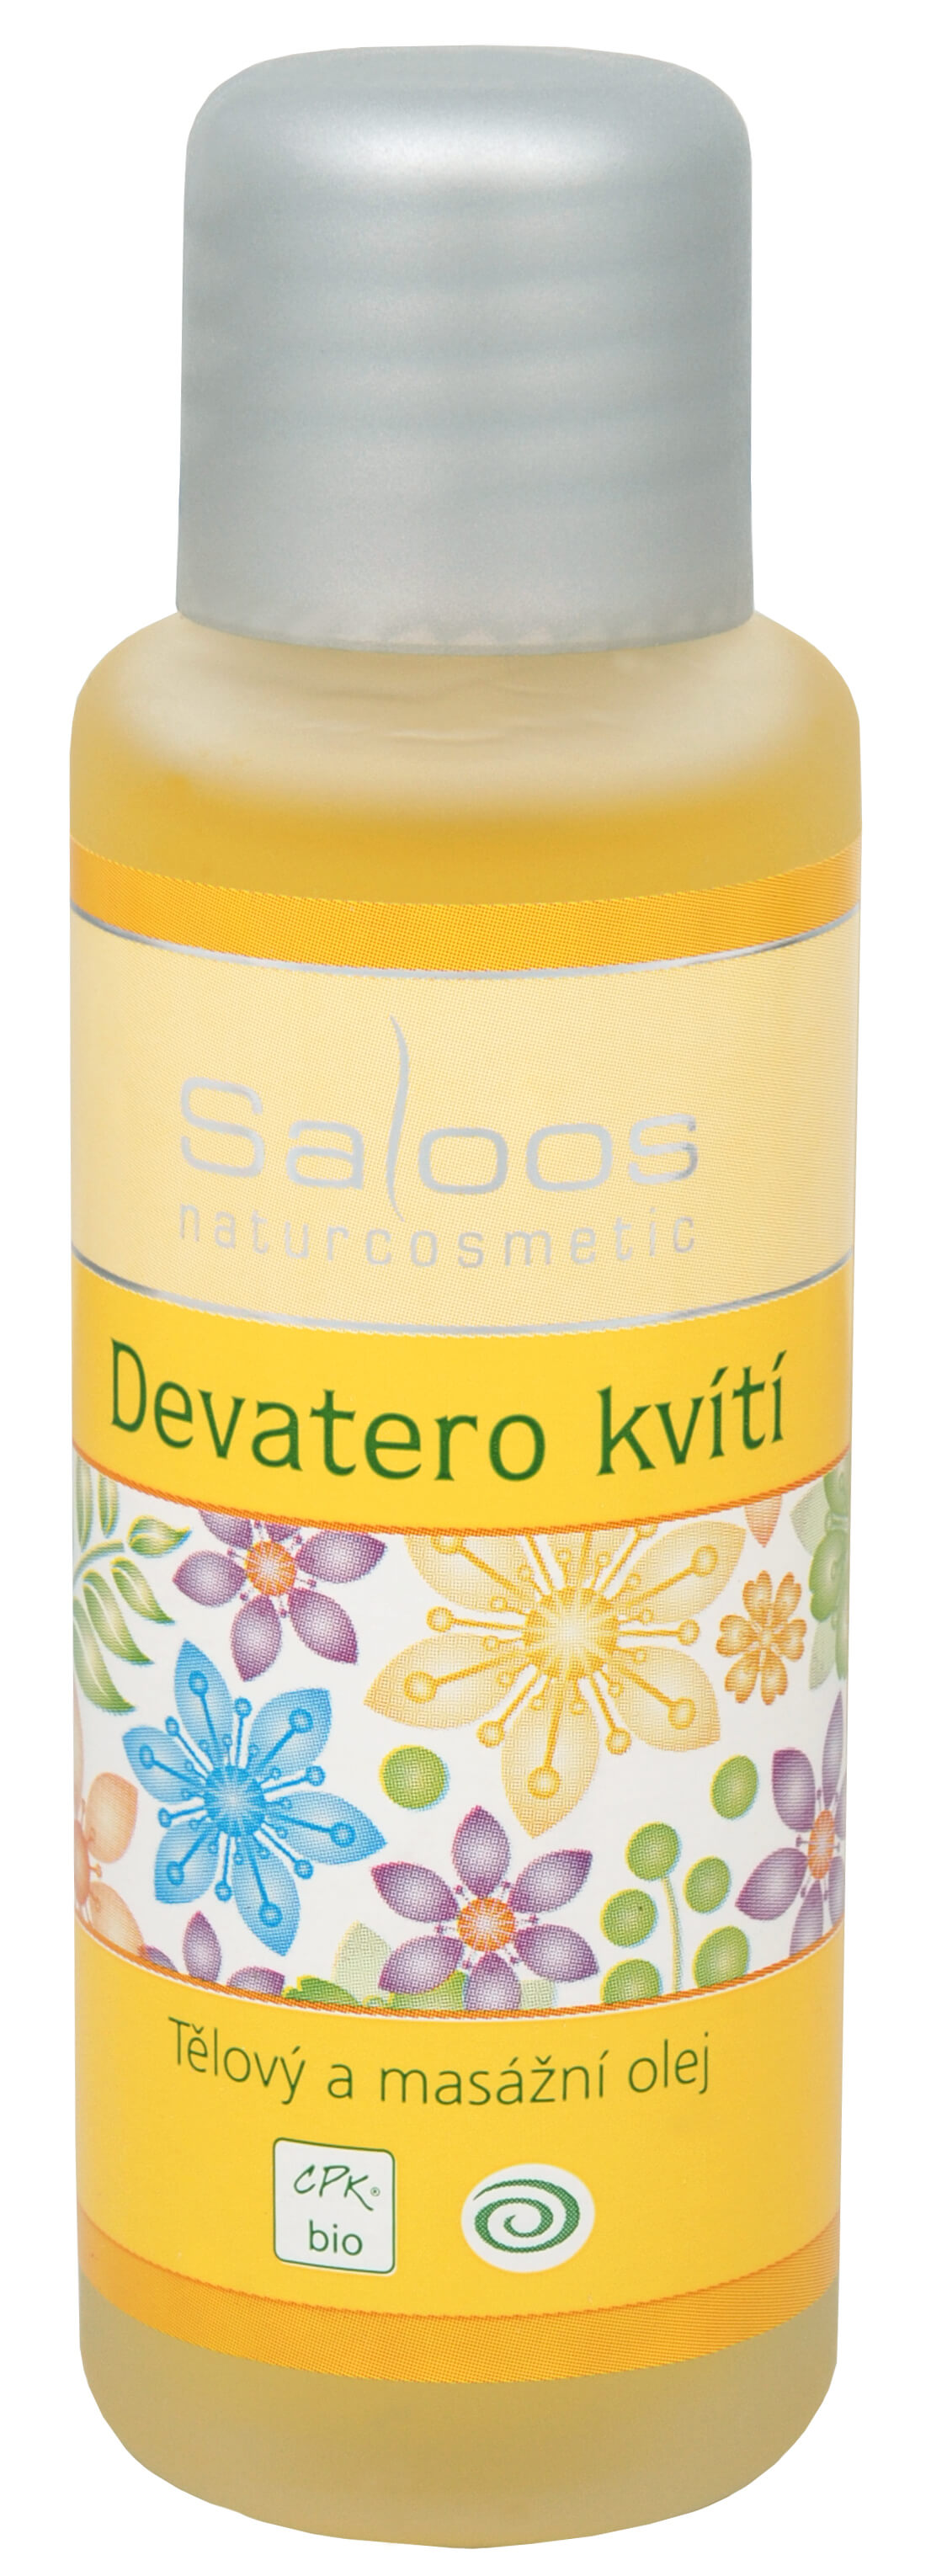 Zobrazit detail výrobku Saloos Bio tělový a masážní olej - Devatero kvítí 50 ml